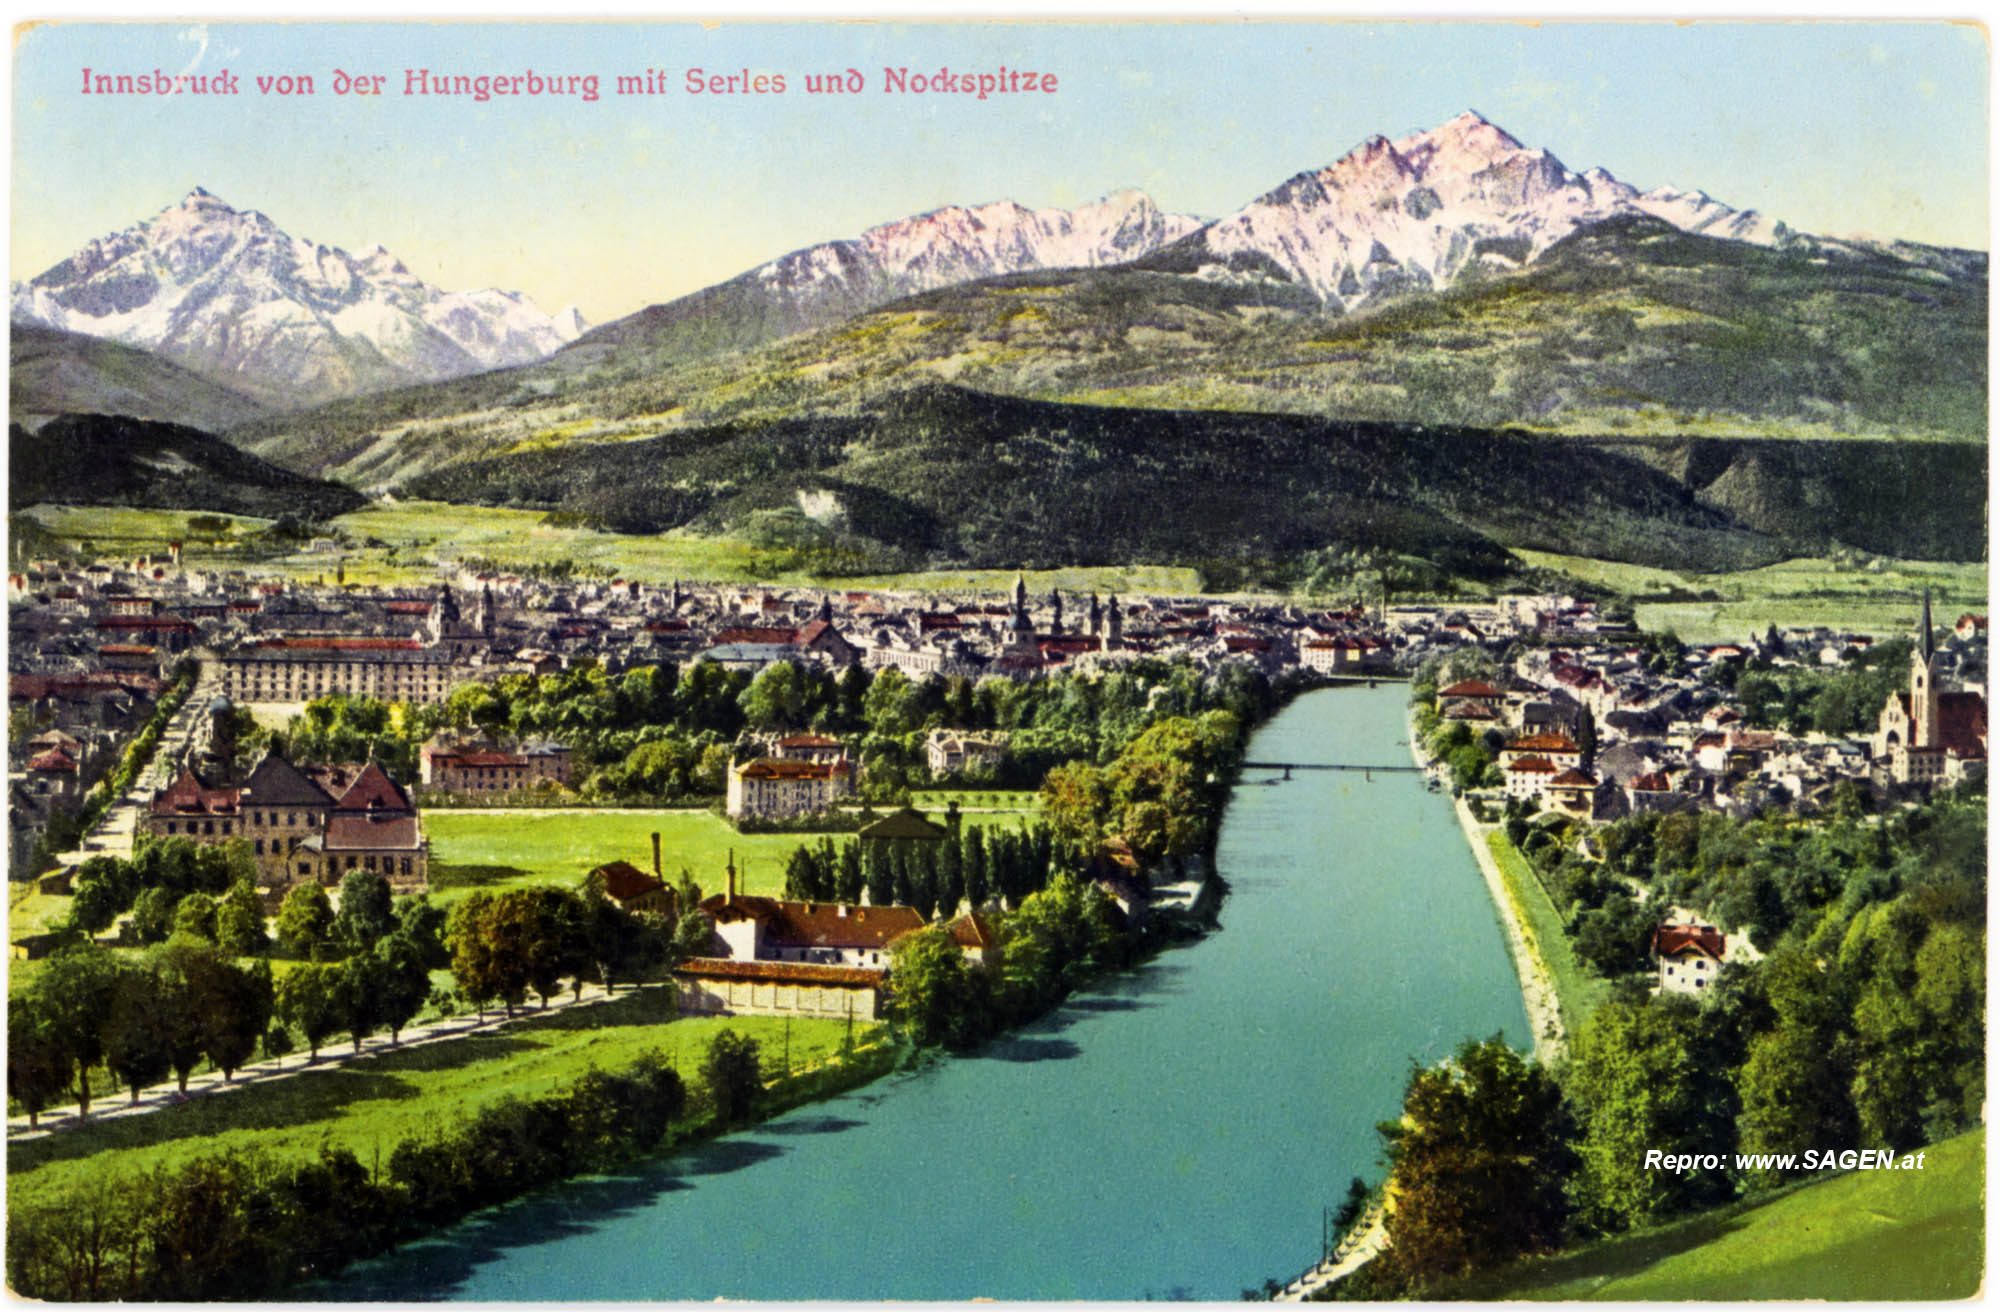 Innsbruck von der Hungerburg mit Serles und Nockspitze